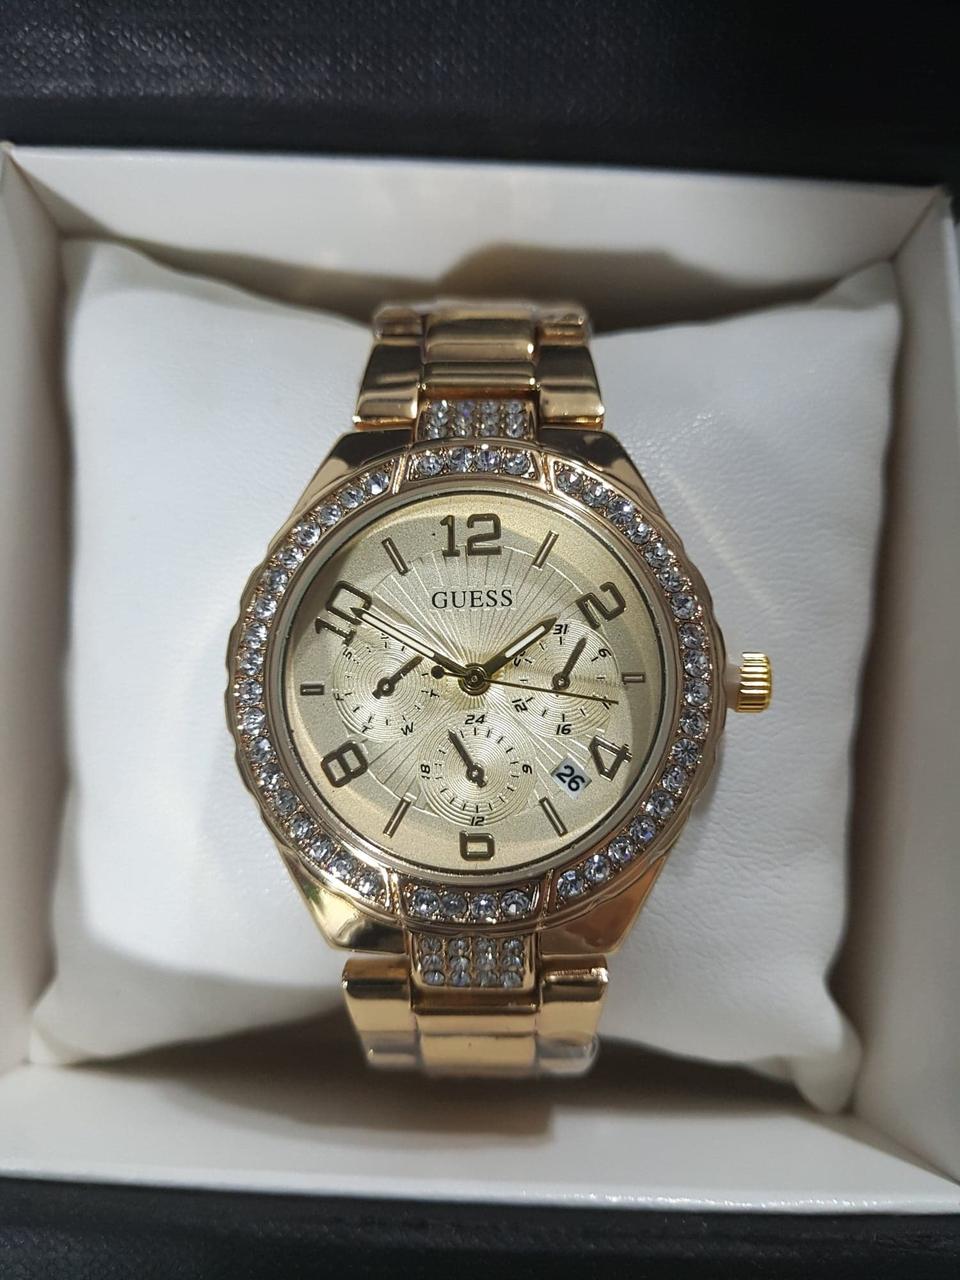 Женские часы Guess Gold, цена 334 грн., купить в Харькове — Prom.ua  (ID#777778338)